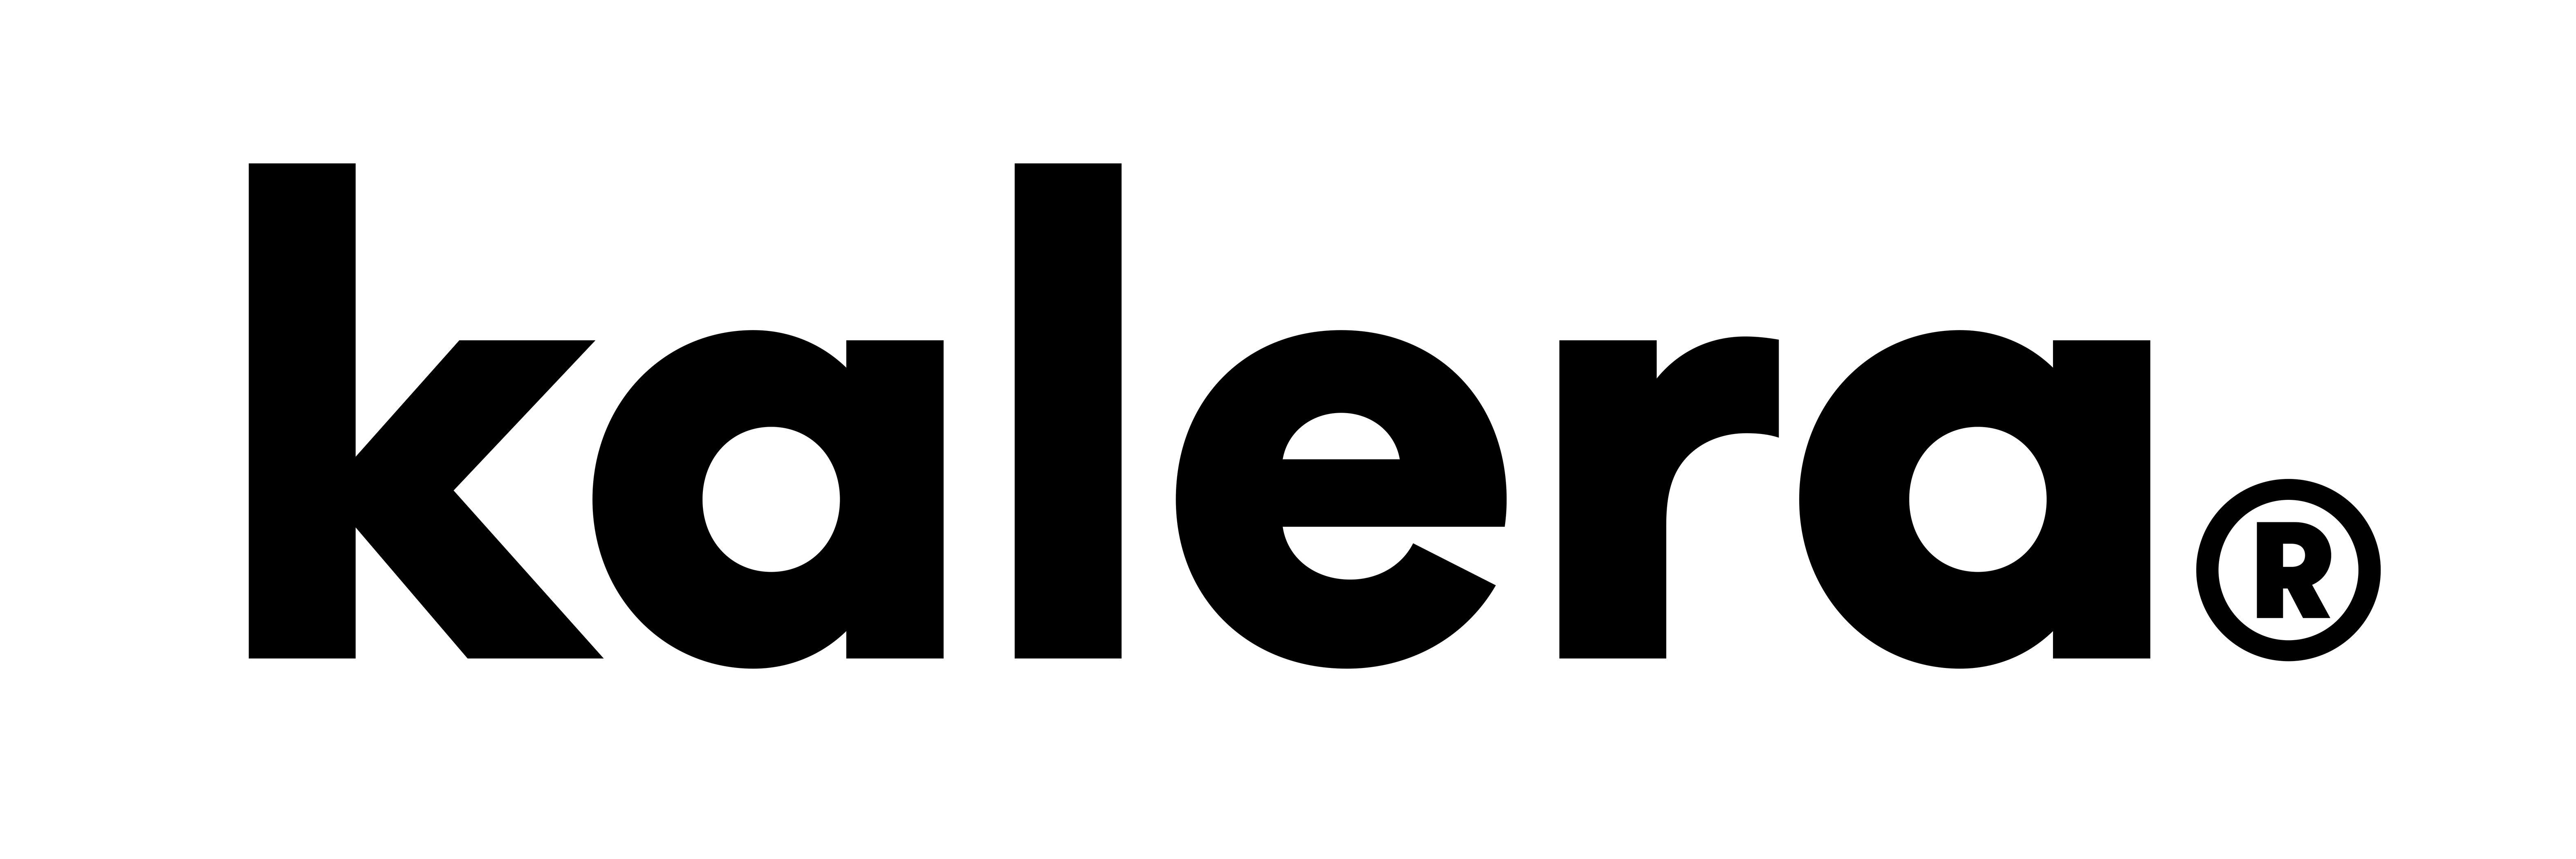 Kalera Logo Transparent (1).png